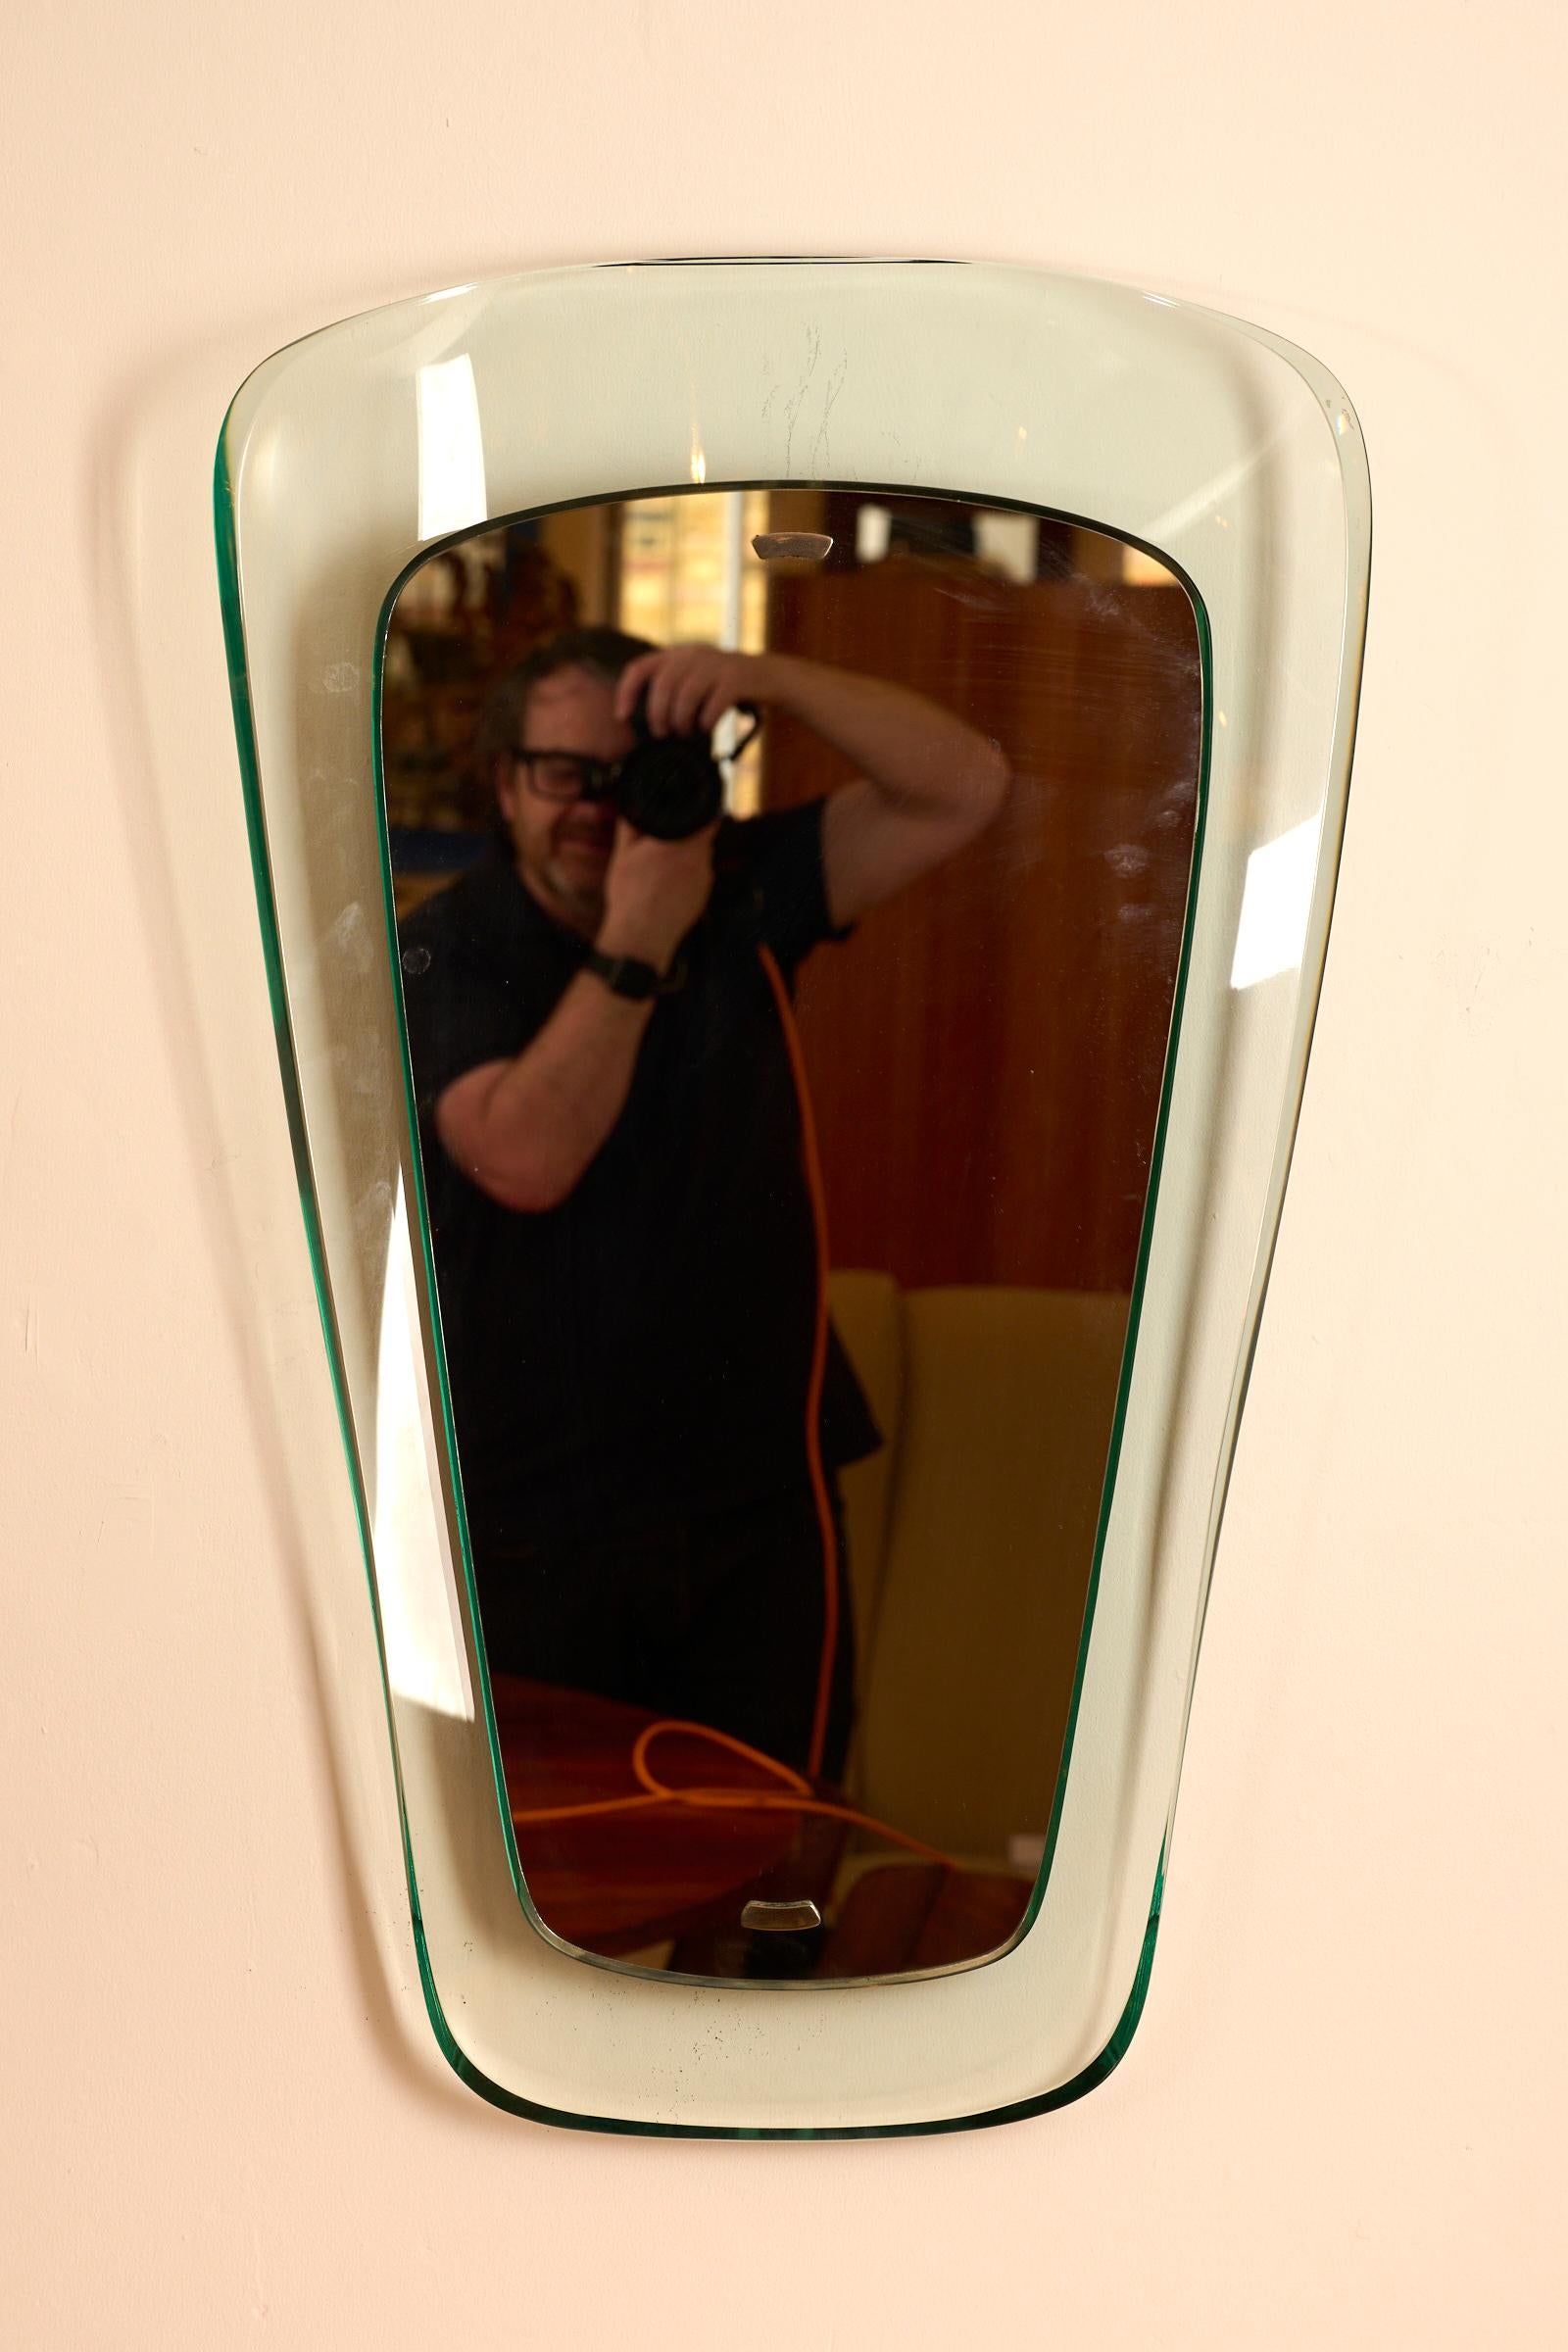 Spiegel von außergewöhnlicher Qualität aus dickem gebogenem Glas mit Spiegelplatte

Hergestellt von Fontana Arte, Mailand, Italien. Rückseite mit Papieretikett des Herstellers

Komplett mit Rückenplatte zum Aufhängen 